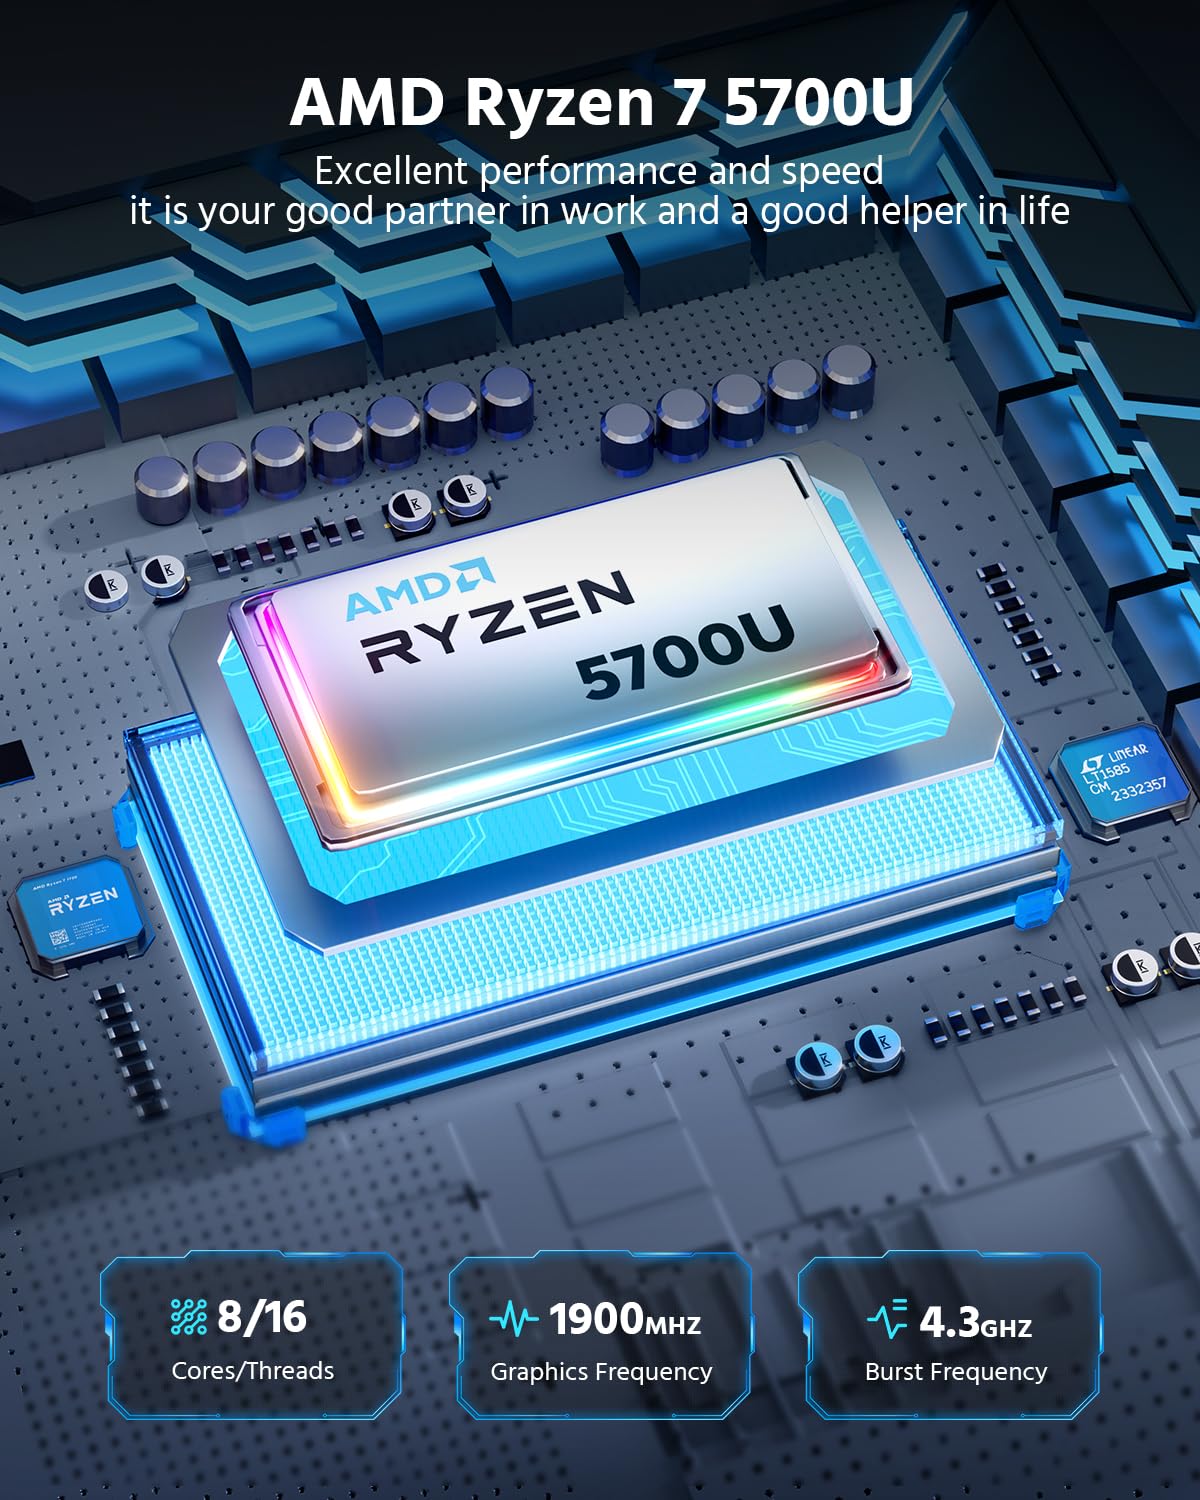 Dual LAN] Mini Gaming PC, AMD Ryzen 7 5700U (8C/16T, up to 4.3Ghz